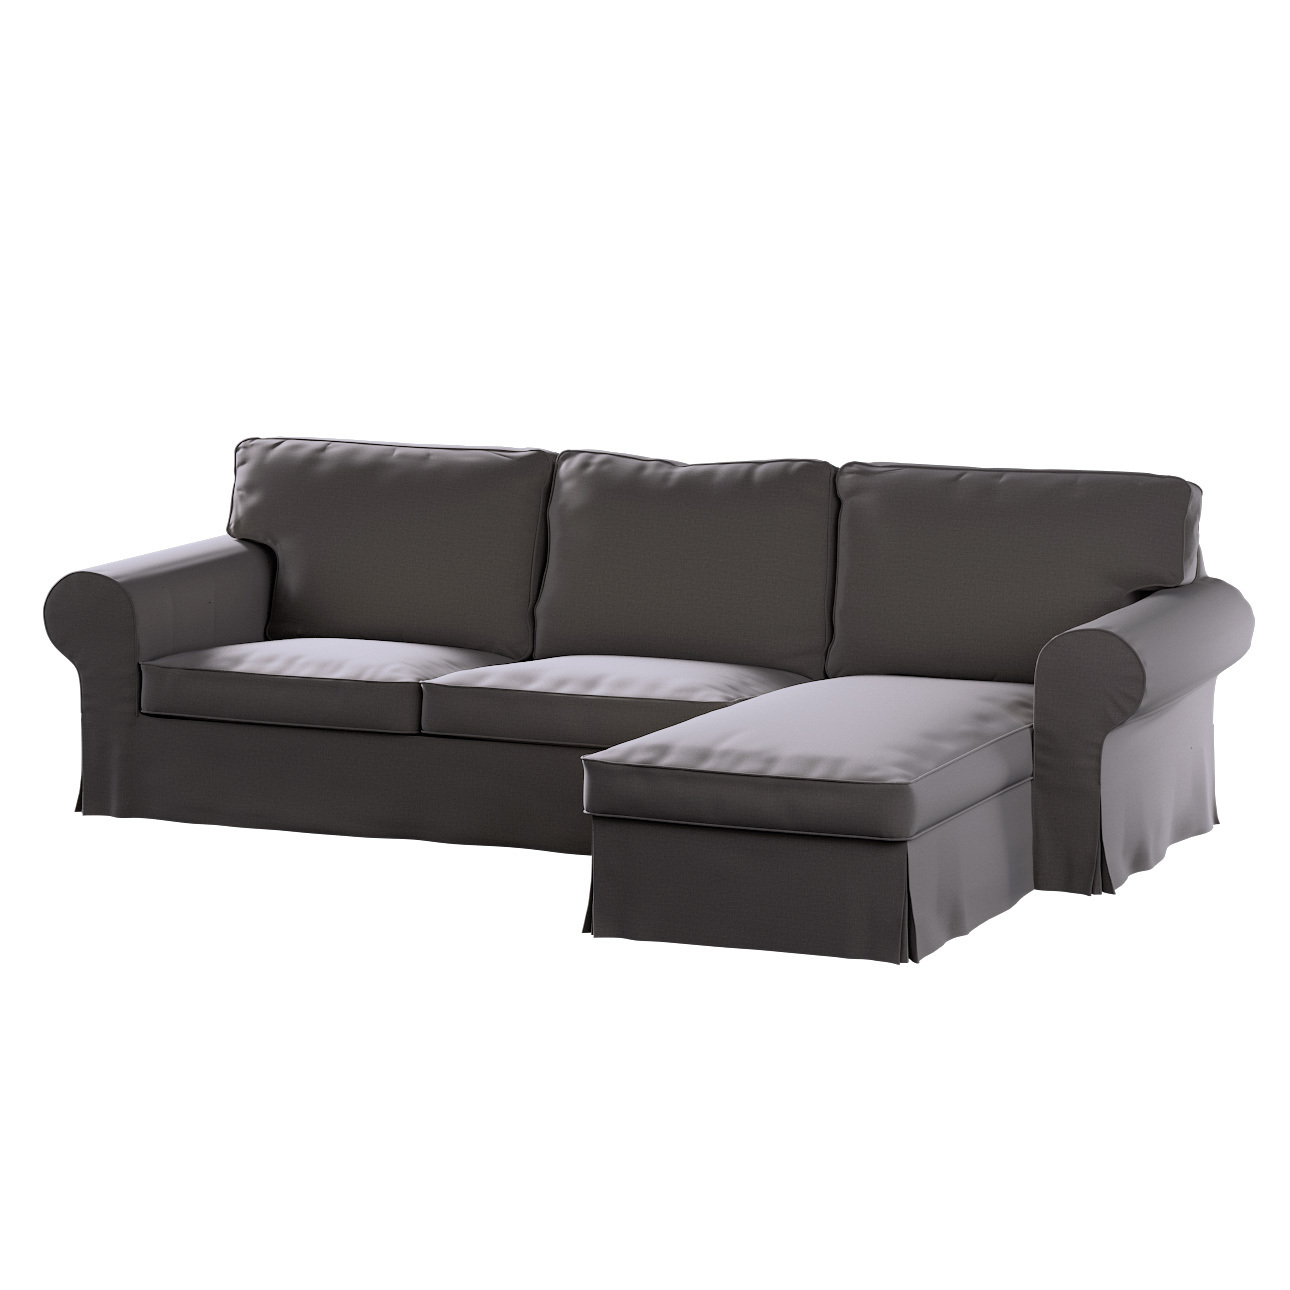 Bezug für Ektorp 2-Sitzer Sofa mit Recamiere, braun, Ektorp 2-Sitzer Sofabe günstig online kaufen